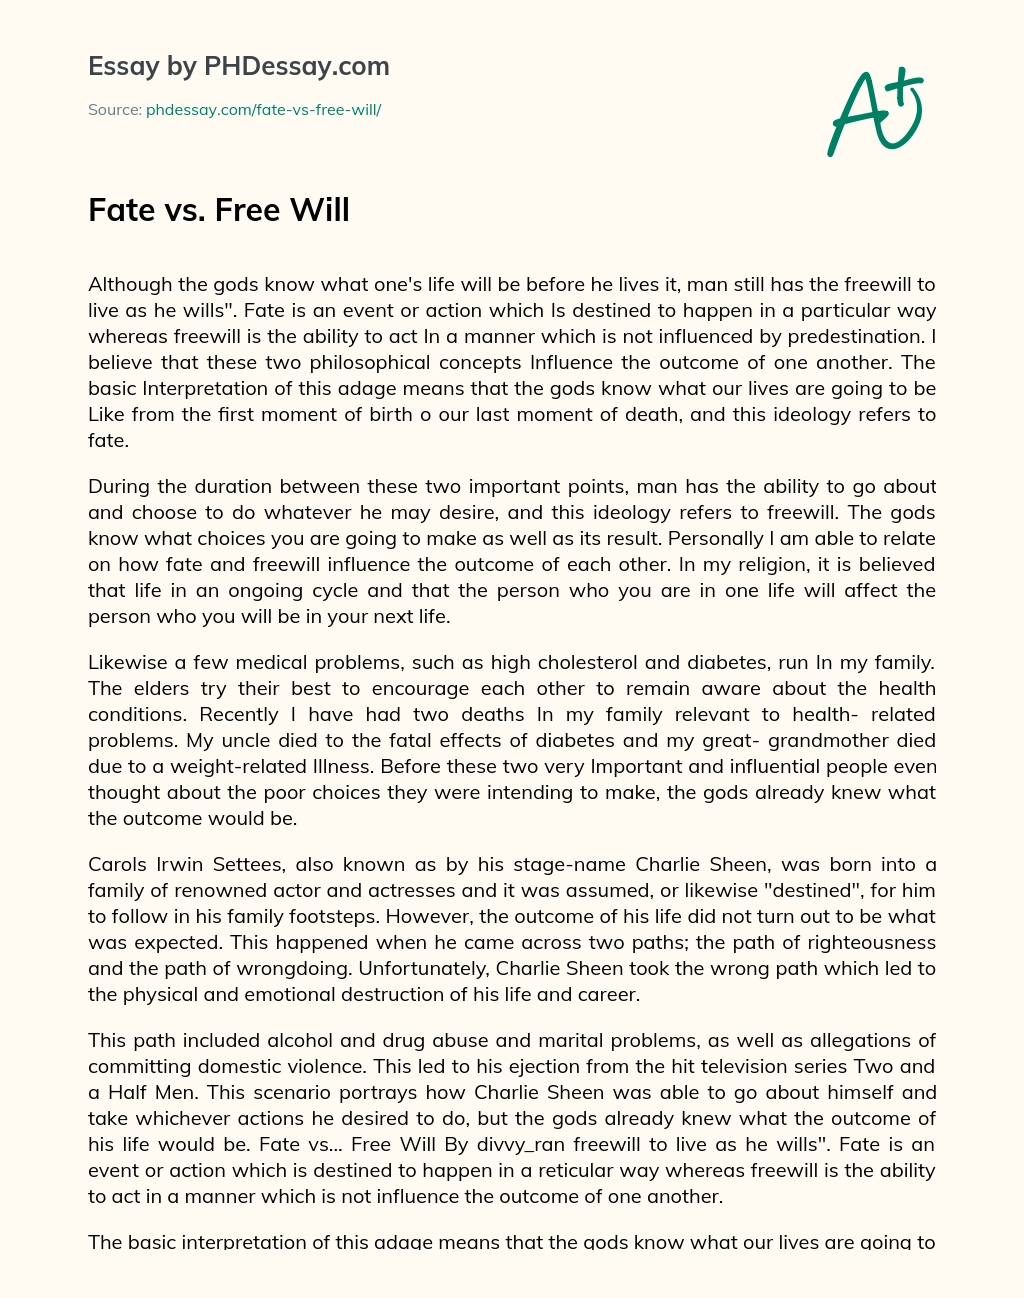 Fate vs. Free Will essay